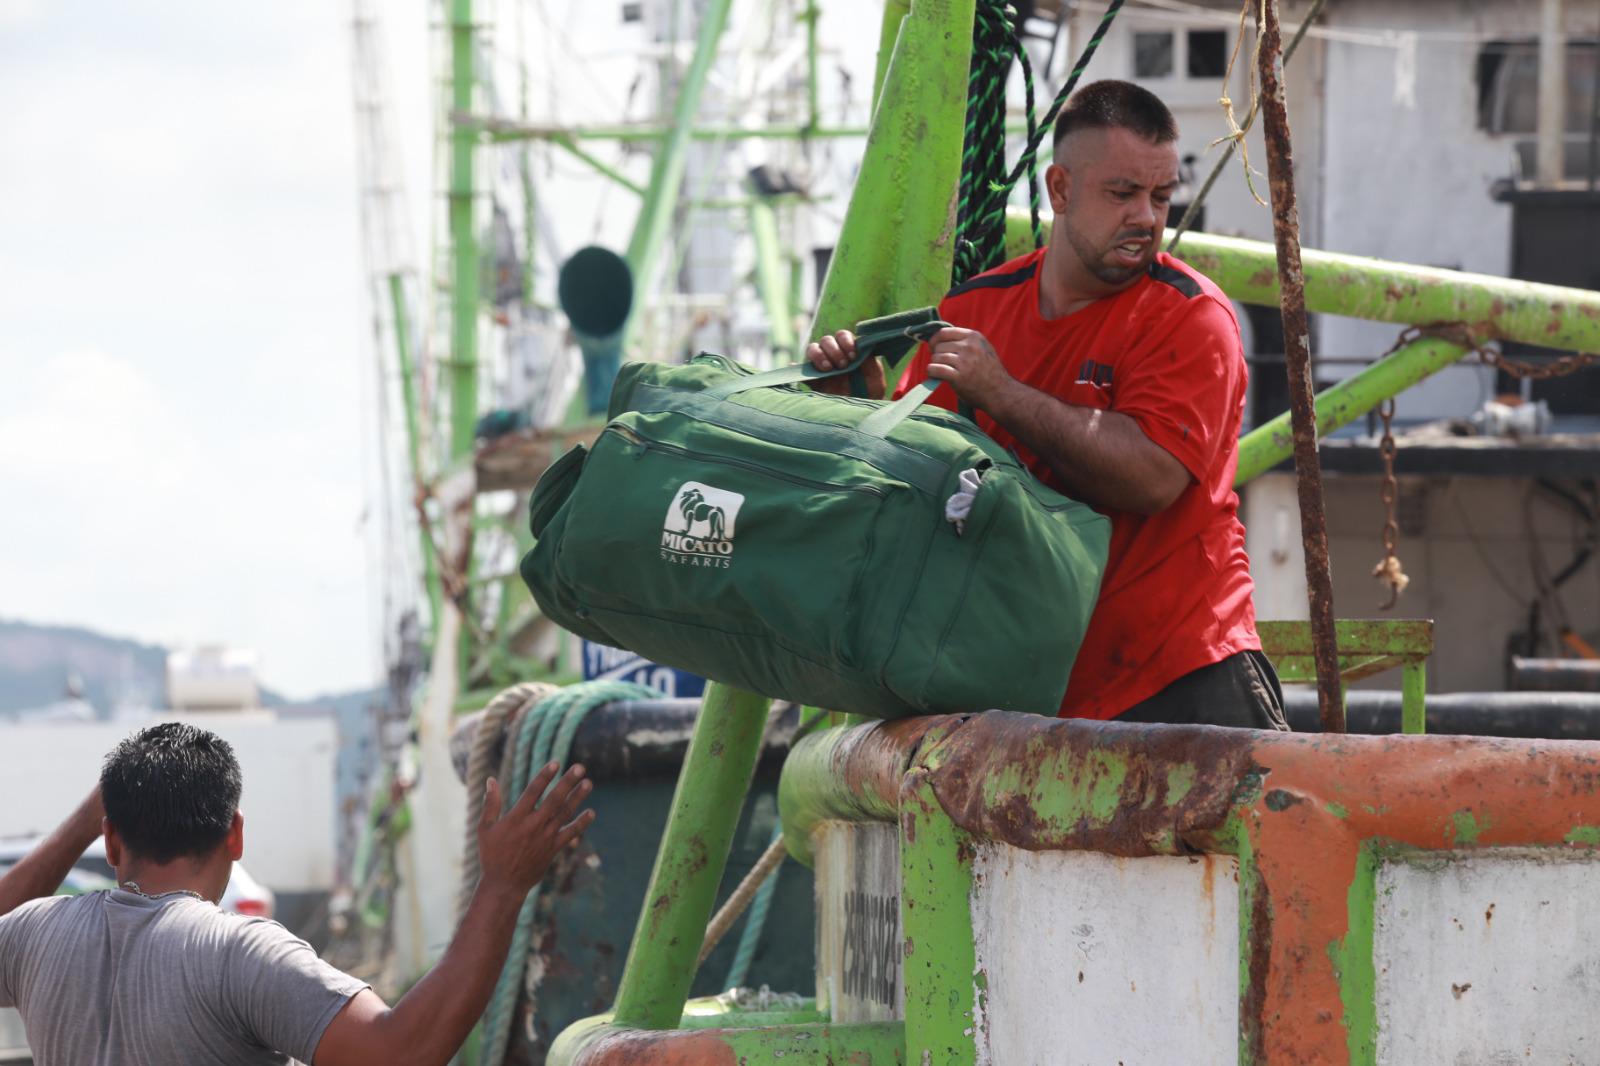 $!Solo el 40% de la flota de Mazatlán saldrá a la pesca del camarón esta temporada